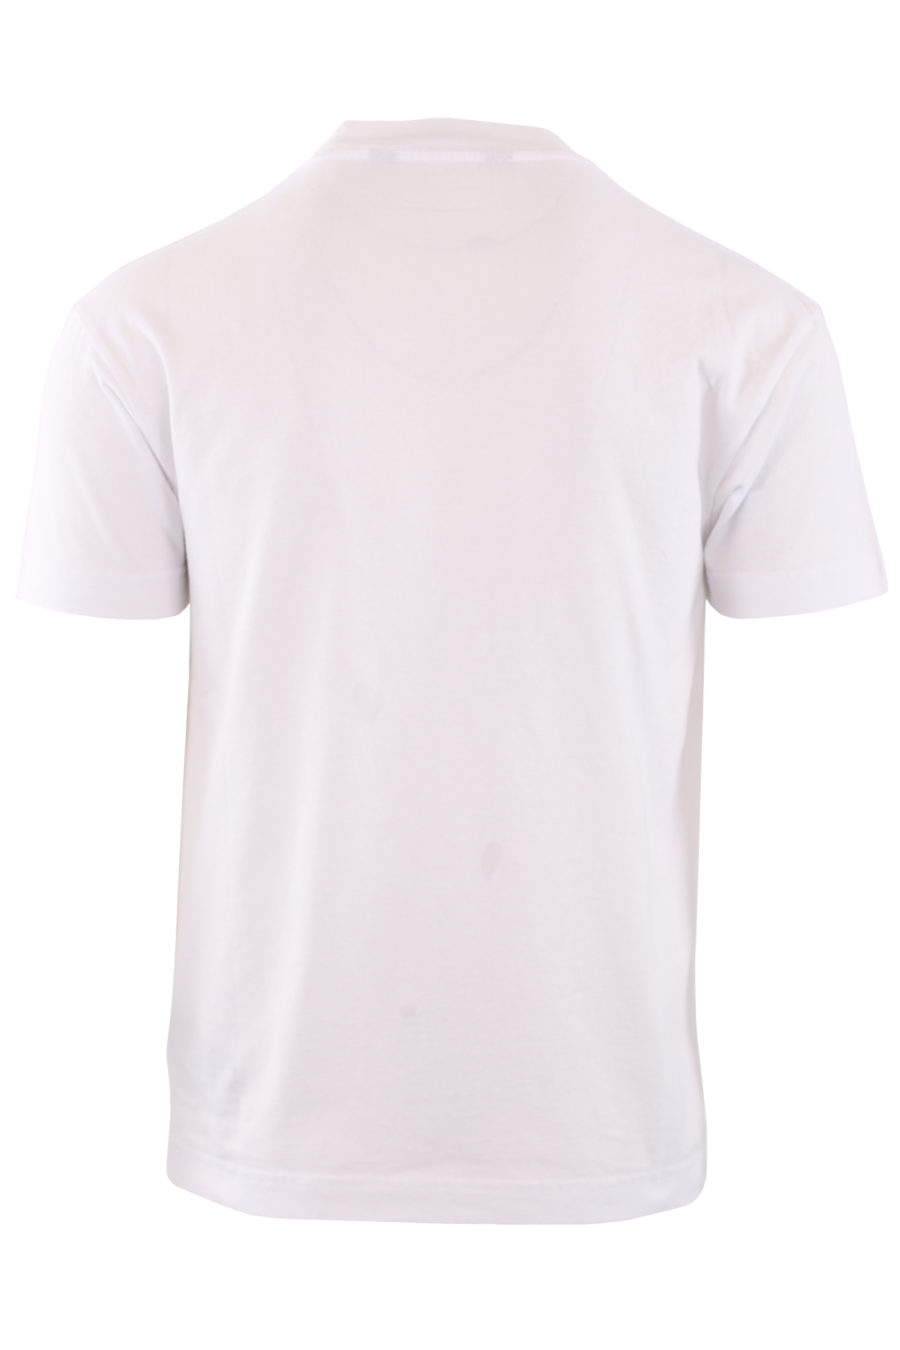 T-shirt branca com motivo de urso e "Spray" - IMG1 9234